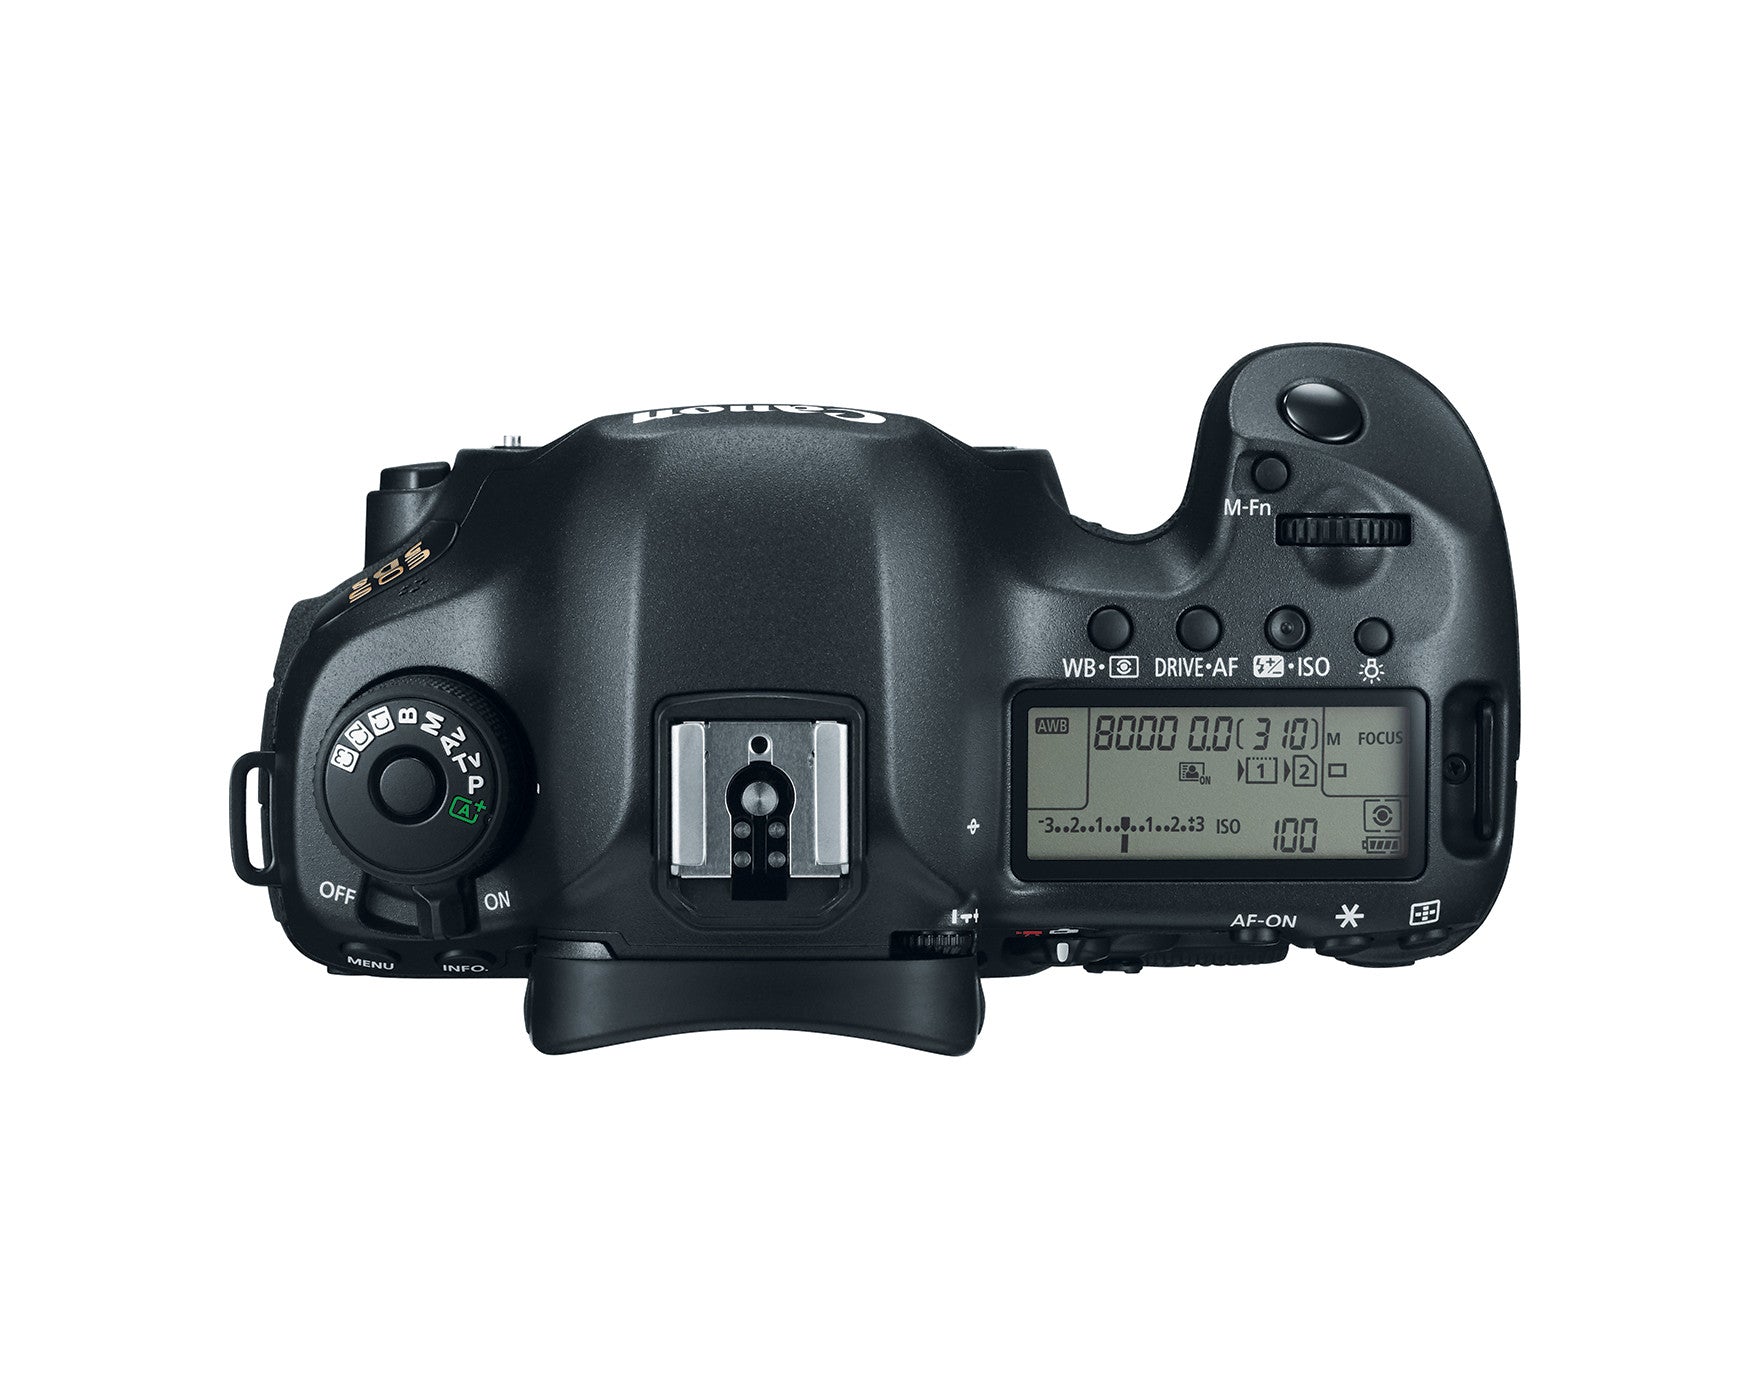 Canon EOS 5DS Digital Camera Body, camera dslr cameras, Canon - Pictureline  - 4